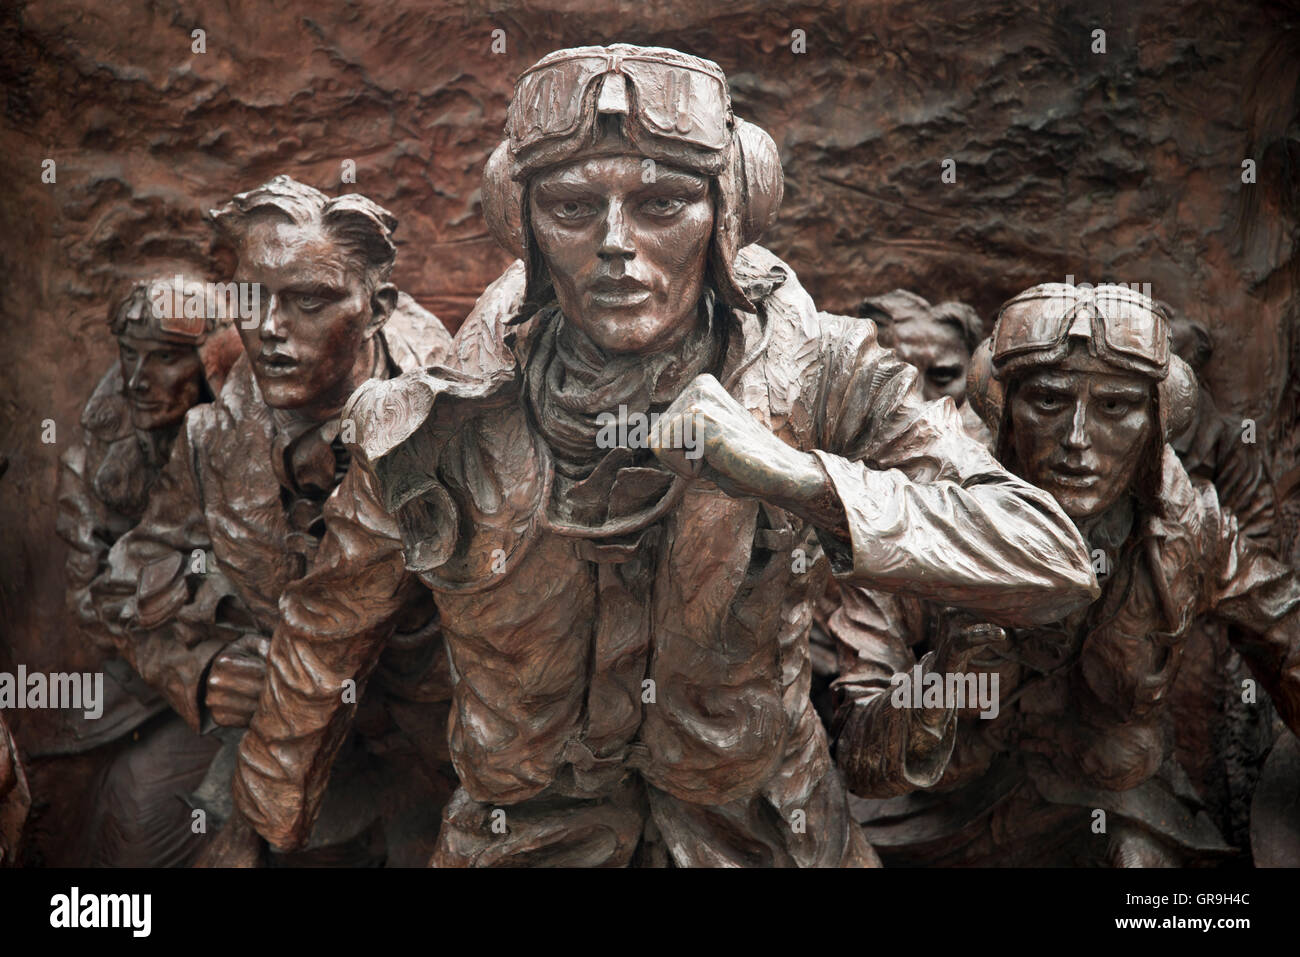 Schlacht von Großbritannien London Denkmal Detail der Bronze durch Paul Day schnitzen. Zeigt Piloten Gerangel um ihre WWII Spitfires Stockfoto